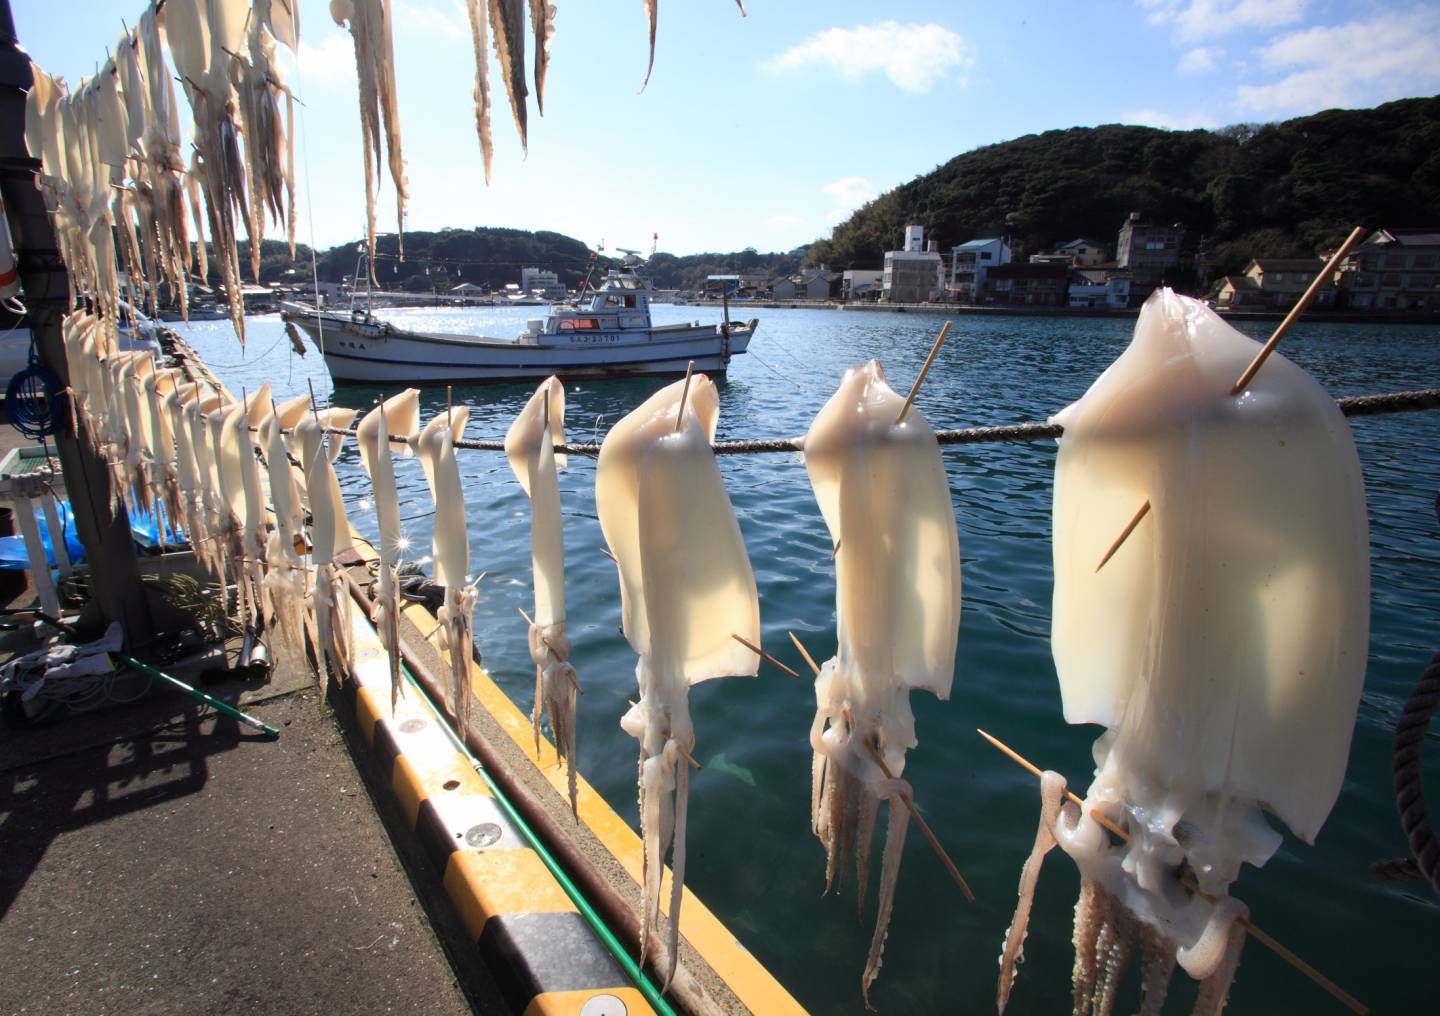 Tintenfische, die zum Trocknen aufgehangen wurden, am Hafen in Karatsu